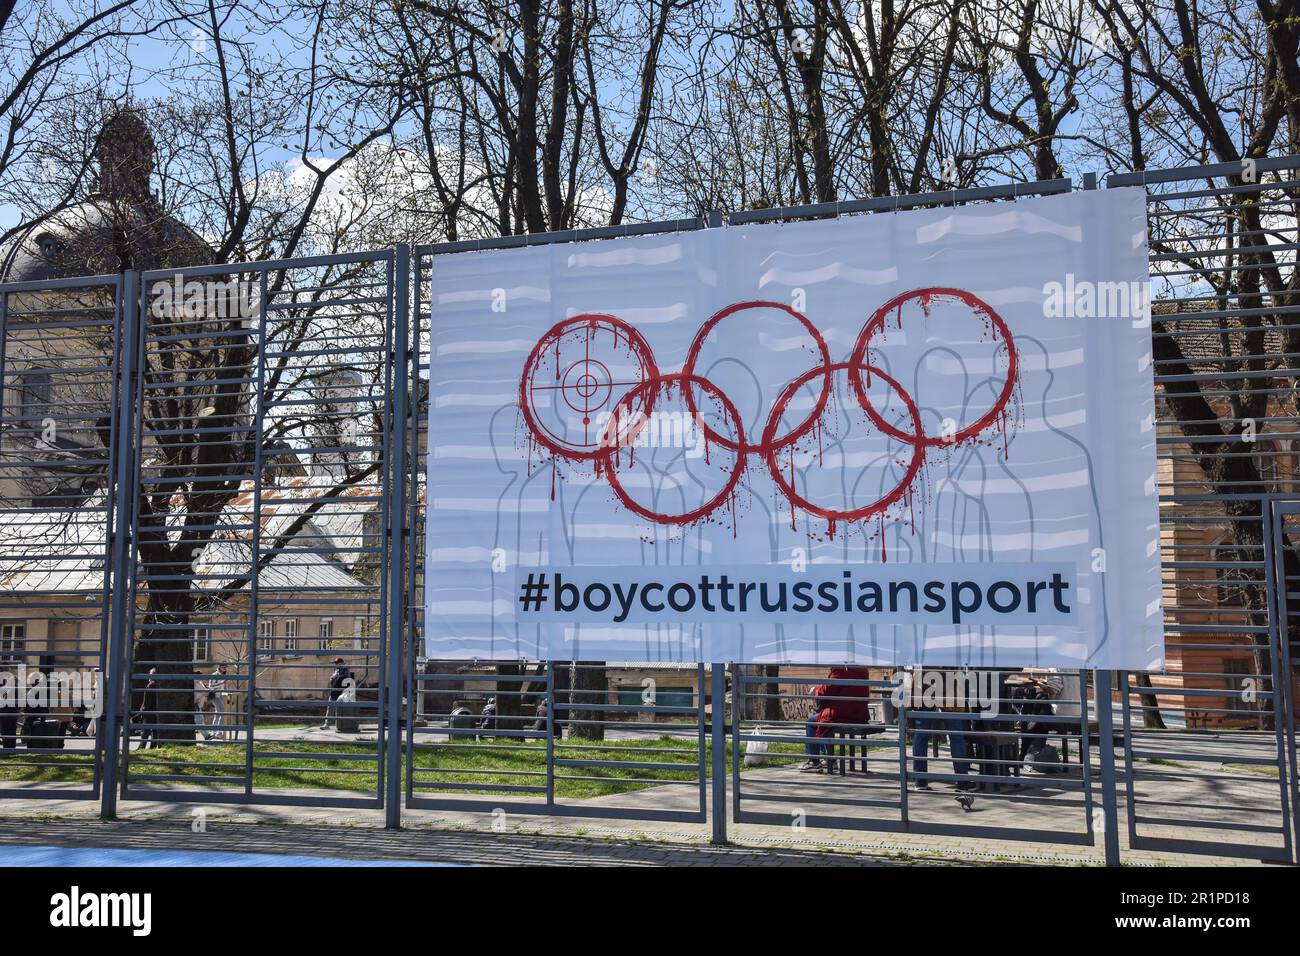 Ein Banner mit der Inschrift #BoycottRussianSport auf einem der Sportplätze in Lemberg. Die Ukraine und viele Länder auf der ganzen Welt fordern, dass russische Athleten wegen des von Russland ausgelösten russisch-ukrainischen Krieges von den Olympischen Spielen und anderen internationalen Wettkämpfen ausgeschlossen werden. Viele ukrainische Athleten, die die Ukraine vor dem russischen Aggressor verteidigten, sind bereits in diesem Krieg gestorben. Zur Unterstützung des Boykotts wurde ein Banner mit der Aufschrift #BoycottRussianSport auf einem der Sportplätze in Lemberg aufgehängt. Stockfoto